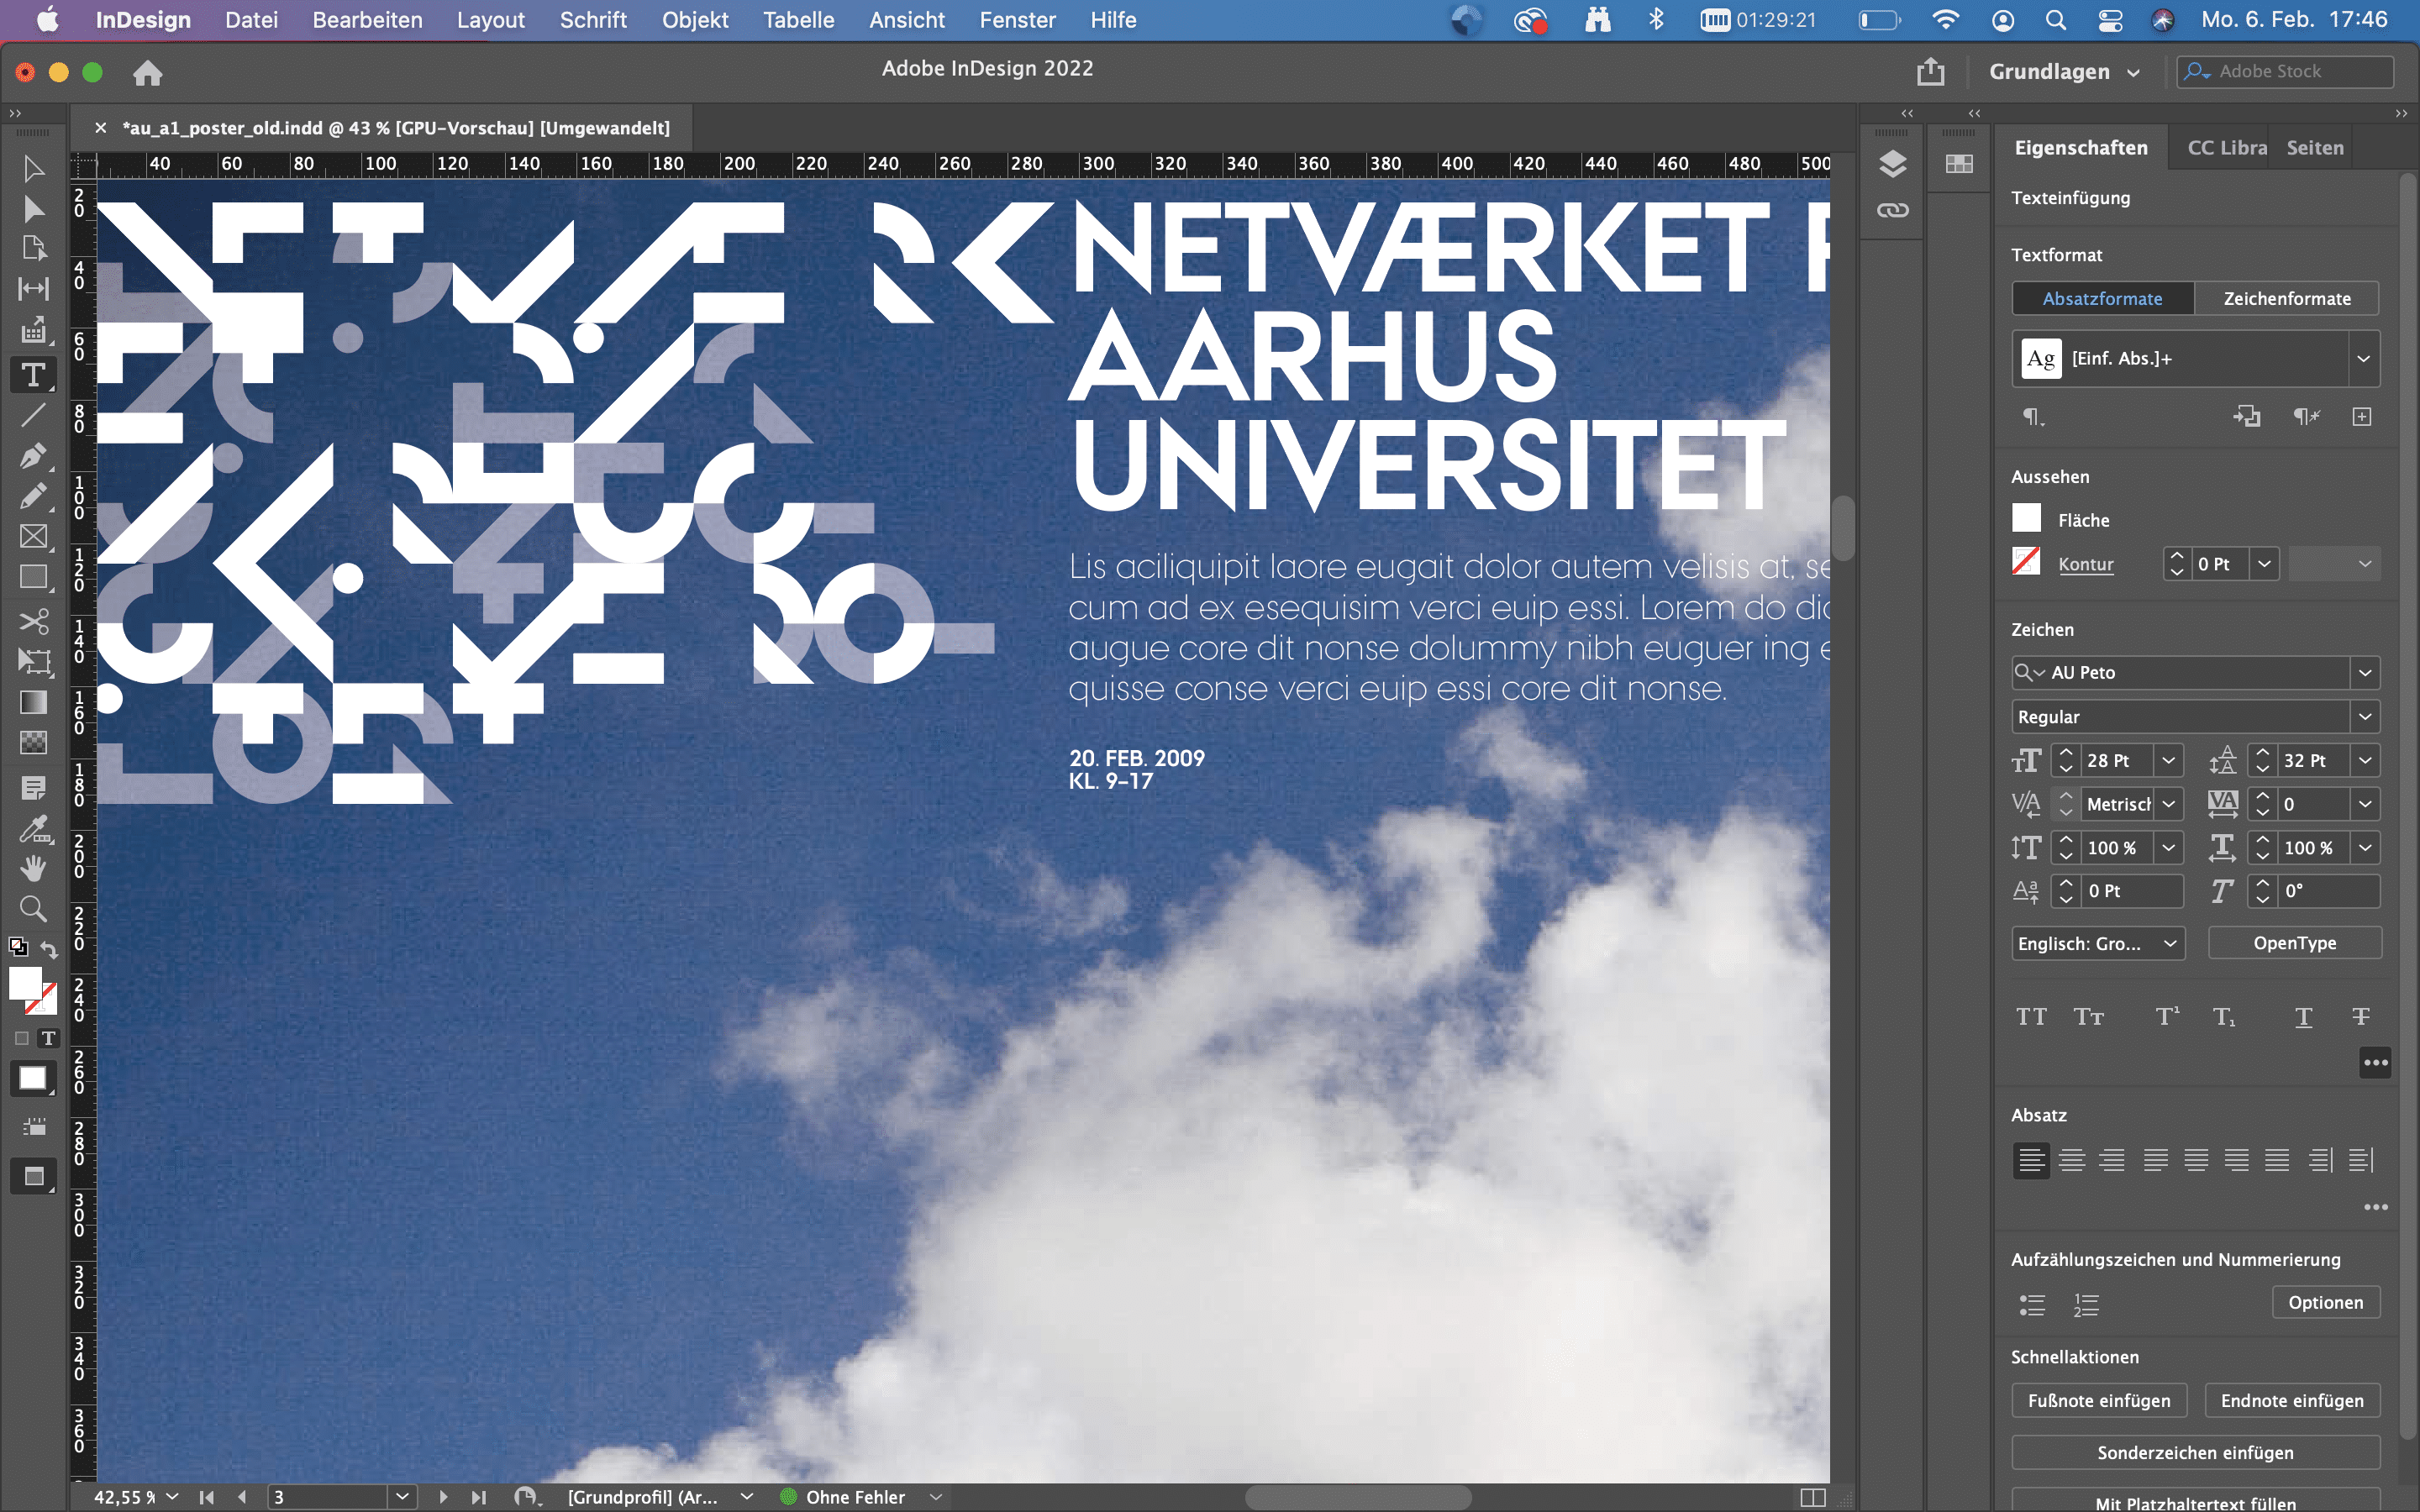 Das fünfte Element in Branddesign: Teilweise abstrakte Typografie vor blauem Himmel mit weißen Wolken auf der Benutzeroberfläche in InDesign